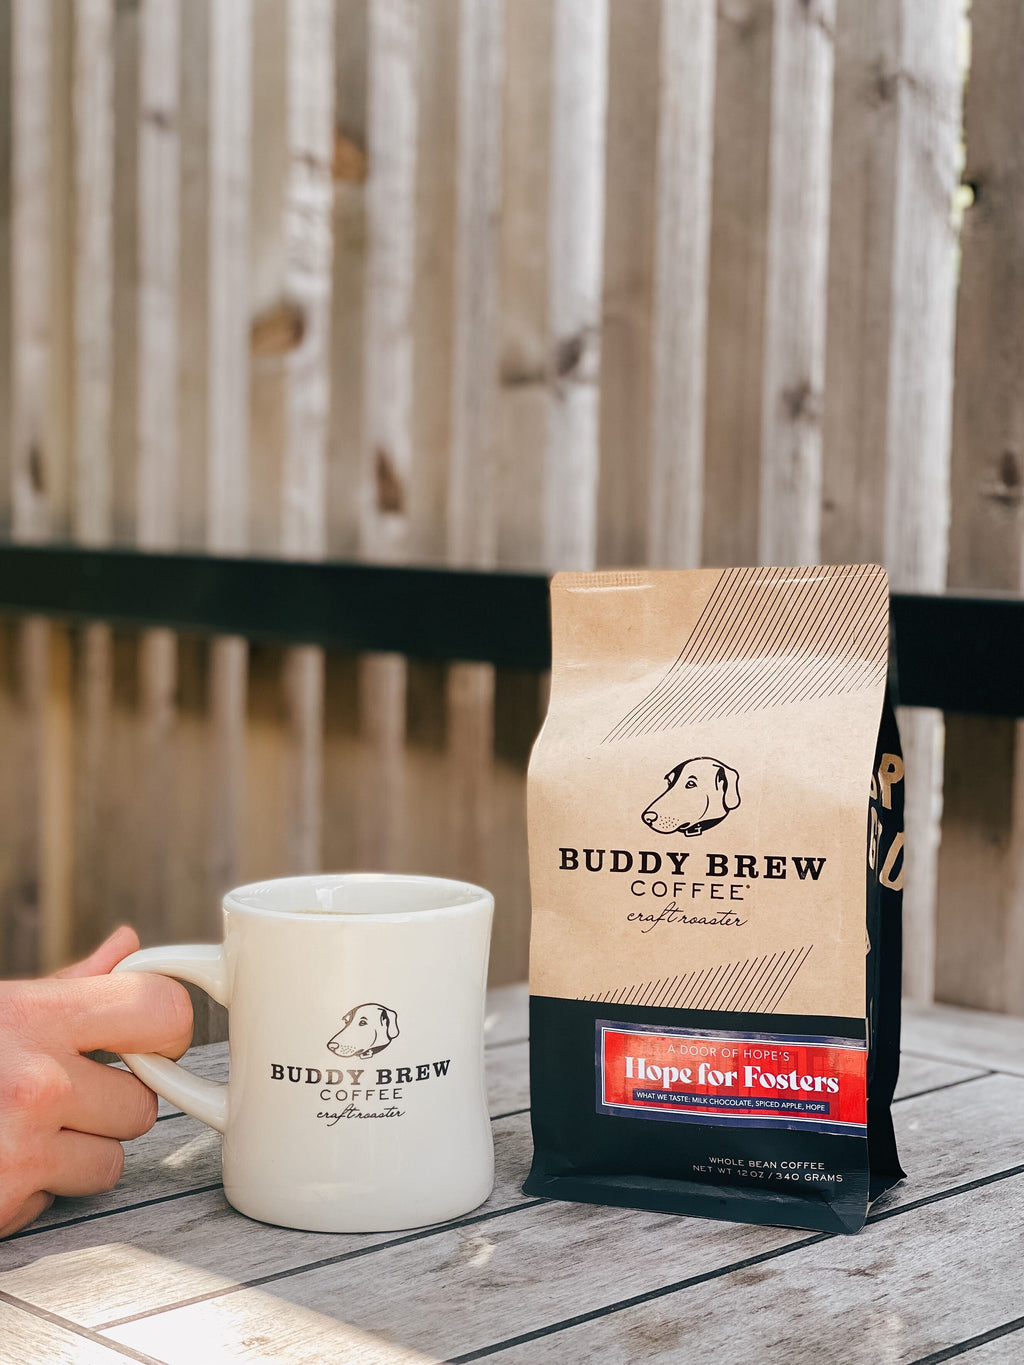 Coffee – Buddy Brew Coffee